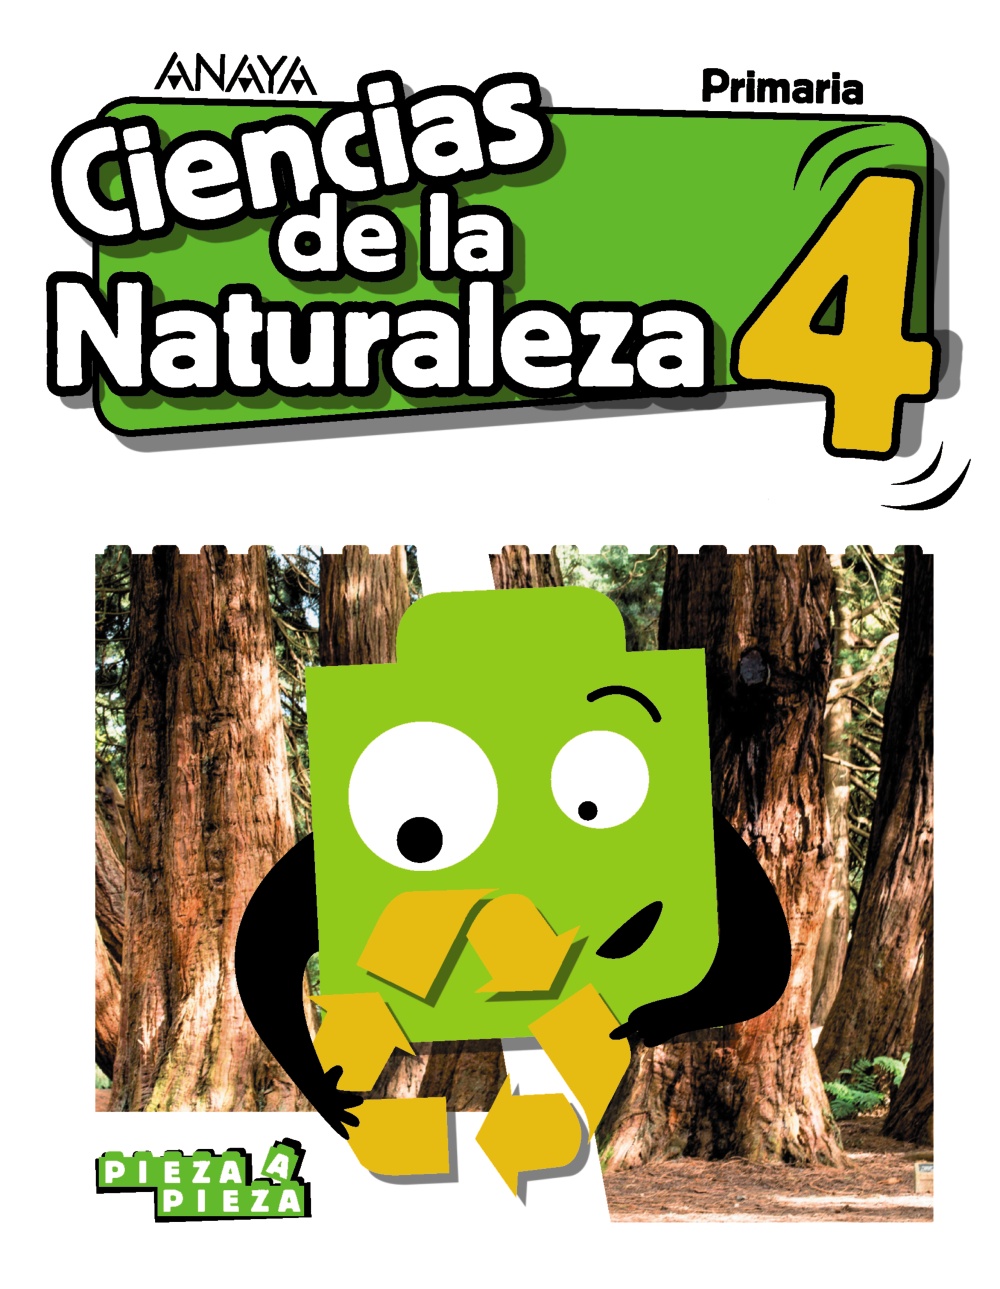 Solucionario Ciencias de la Naturaleza 4 Primaria Anaya Pieza a Pieza PDF Ejercicios Resueltos-pdf